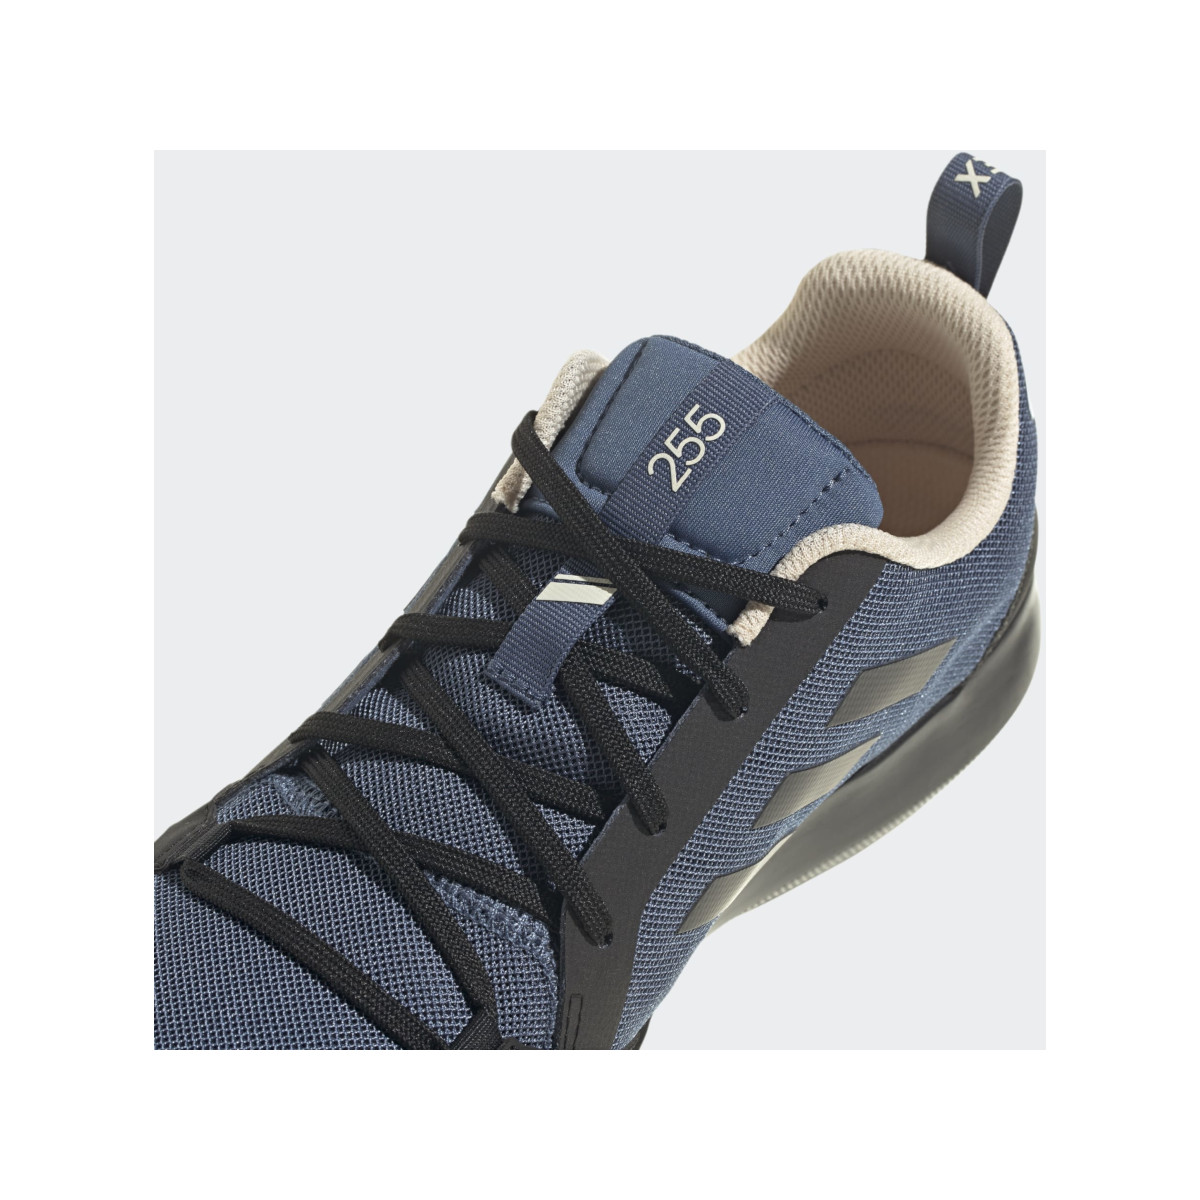 Adidas Boot Lace bootschoen heren zwart-blauw, maat 42